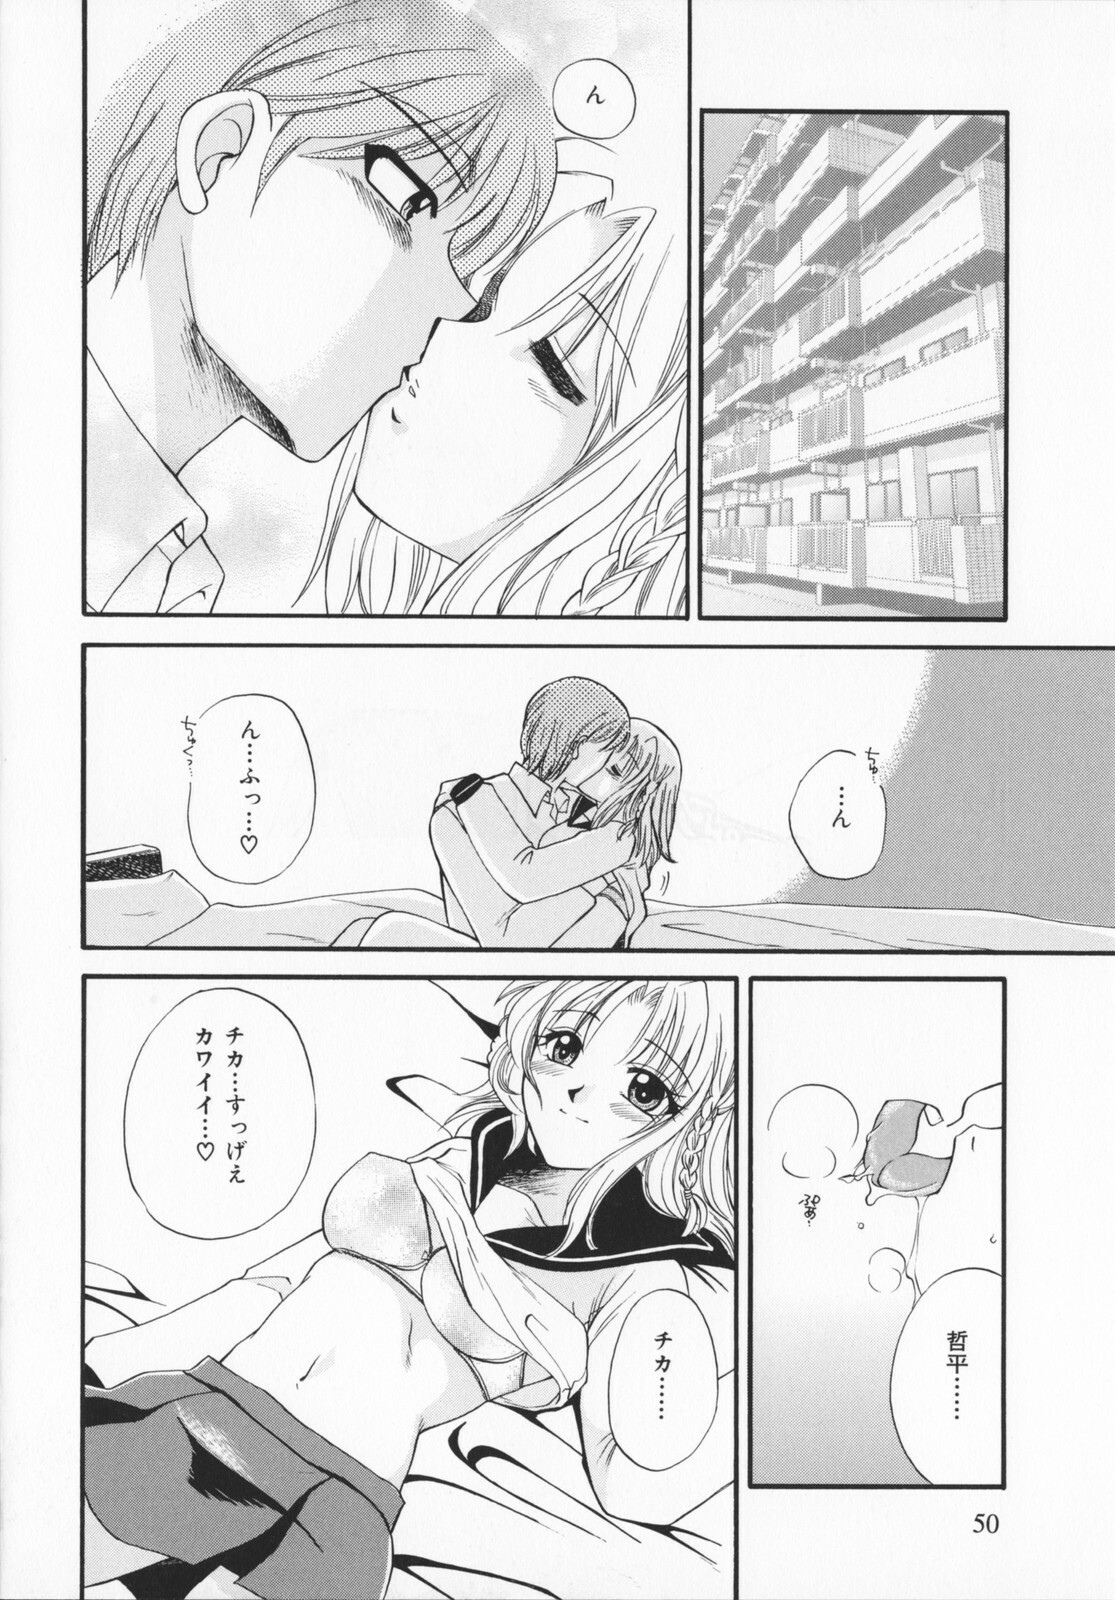 [Ureshino Megumi]Genkaiharetsu (LIMIT EXPLOSION) page 49 full